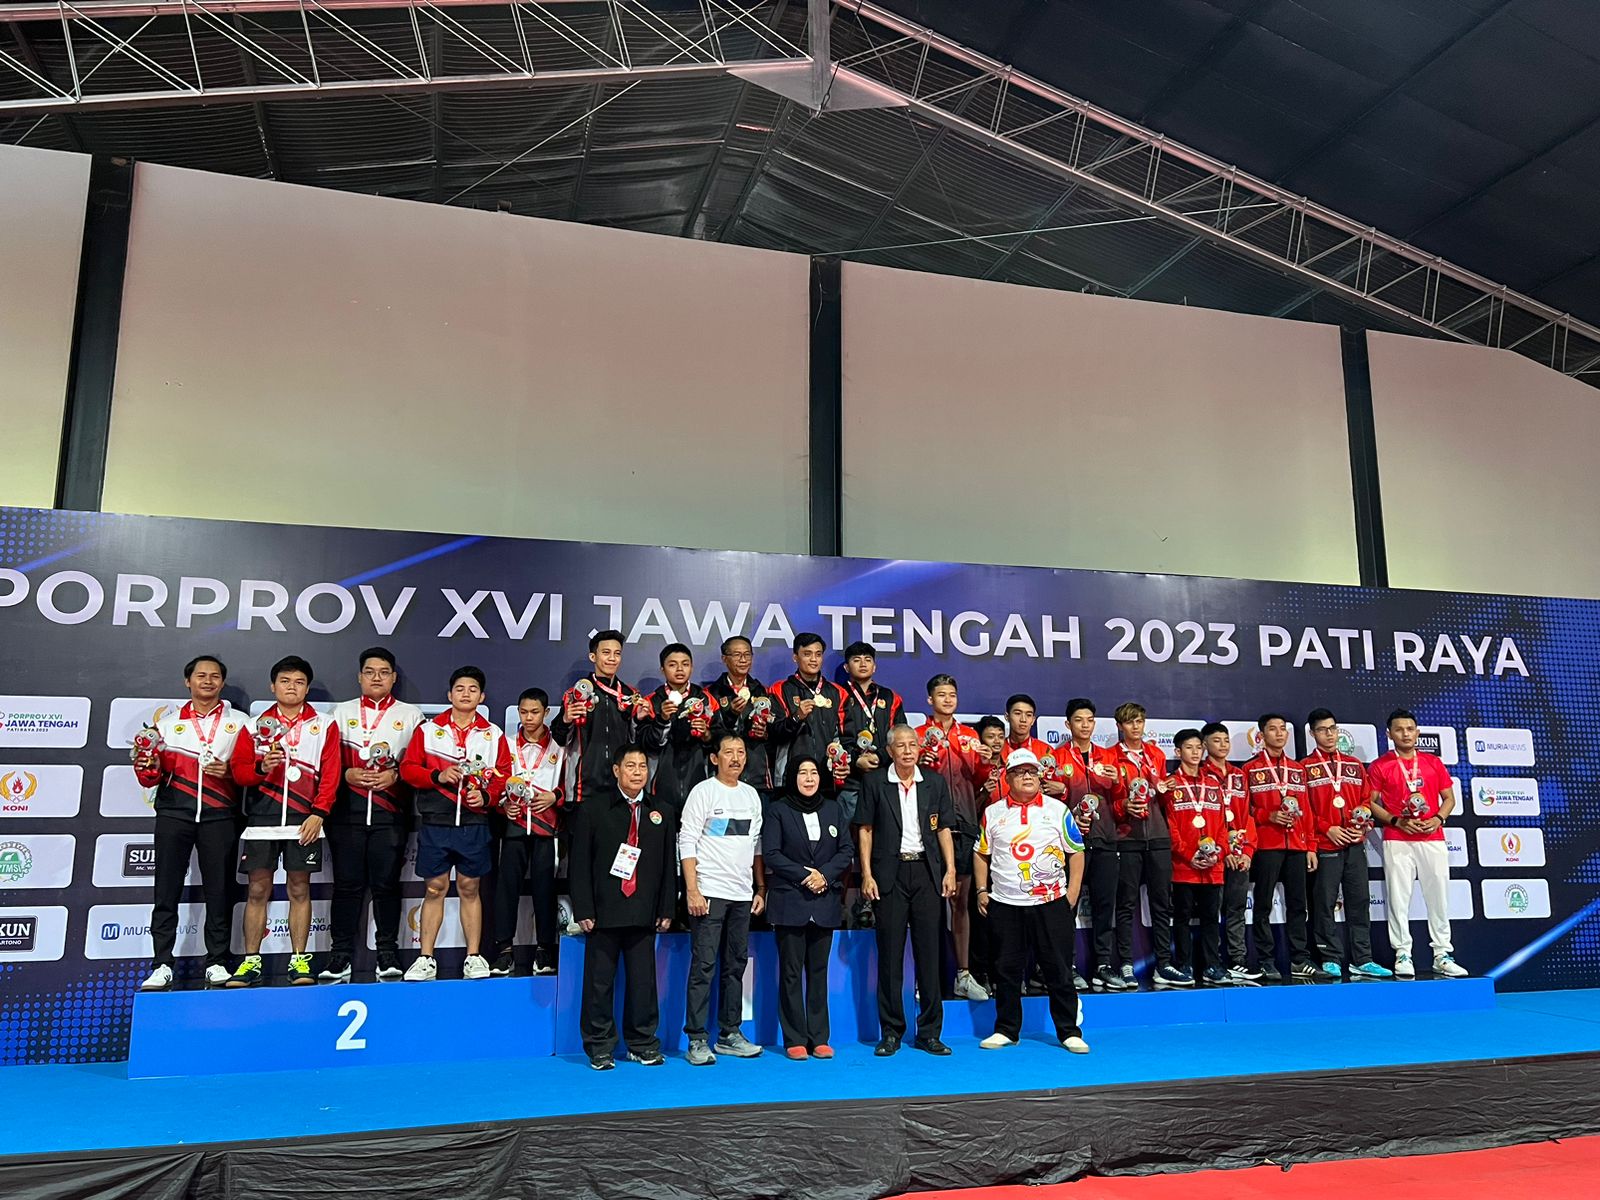 Foto Pekan Olahraga Provinsi XVI Jawa Tengah